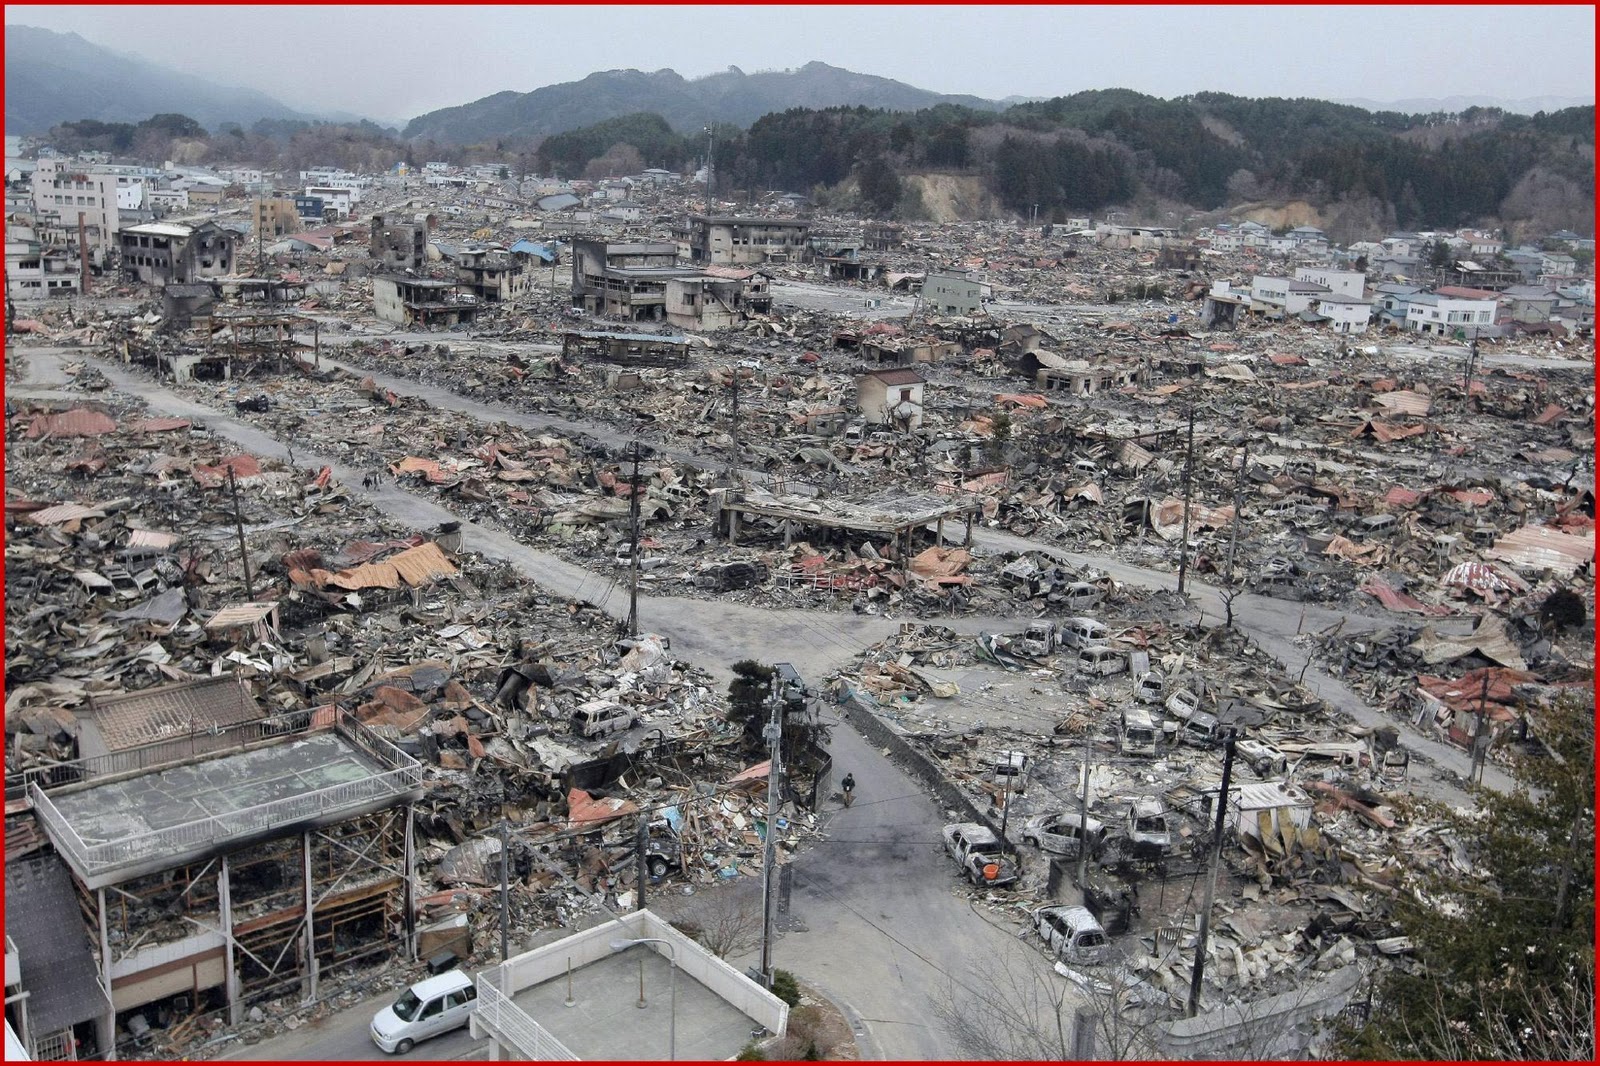 Землетрясение в т. Землетрясение в Токио 2011. ЦУНАМИ В Японии в 2011. Землетрясение Тохоку 2011. Землетрясение в Японии 2011 Фукусима.